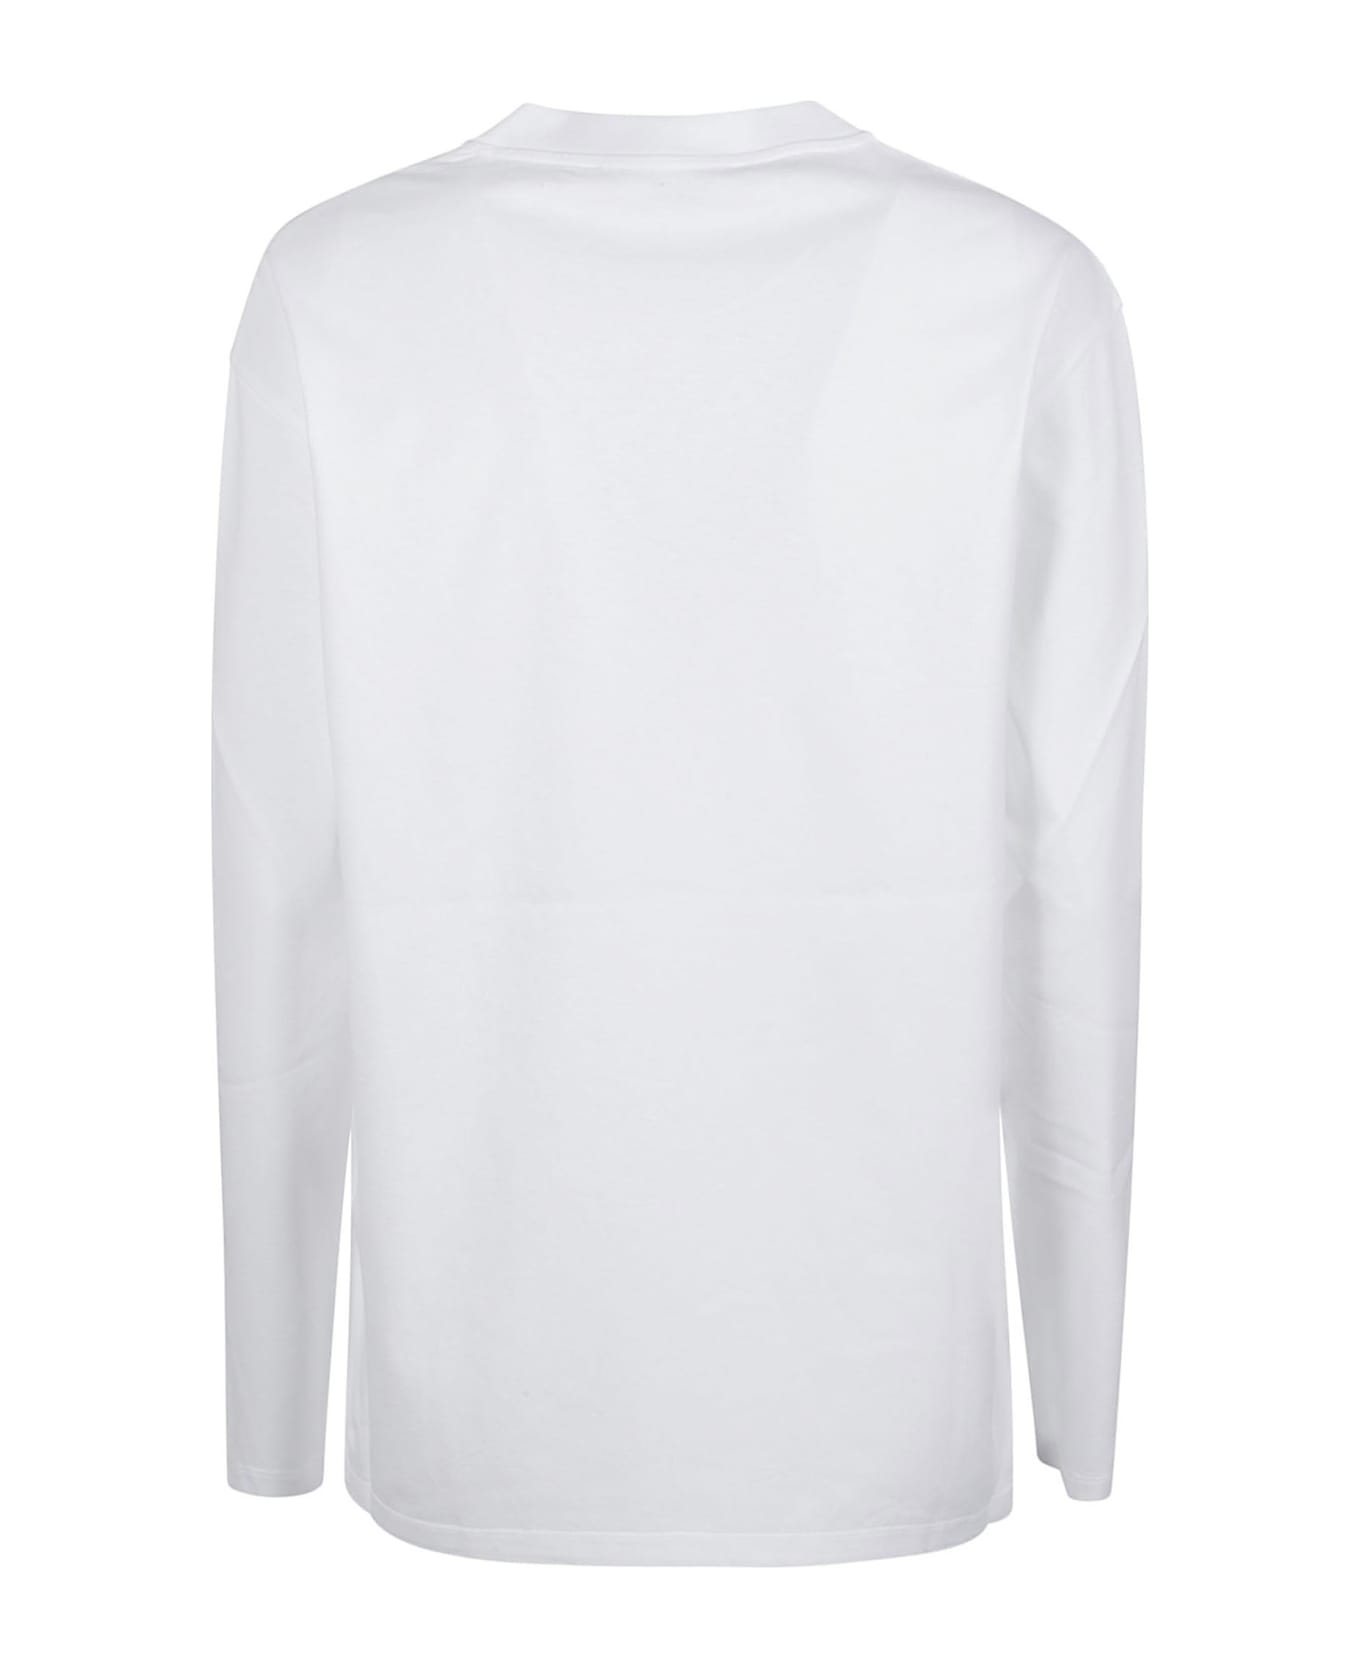 Stella McCartney Iconic Stella Sweatshirt - PURE WHITE